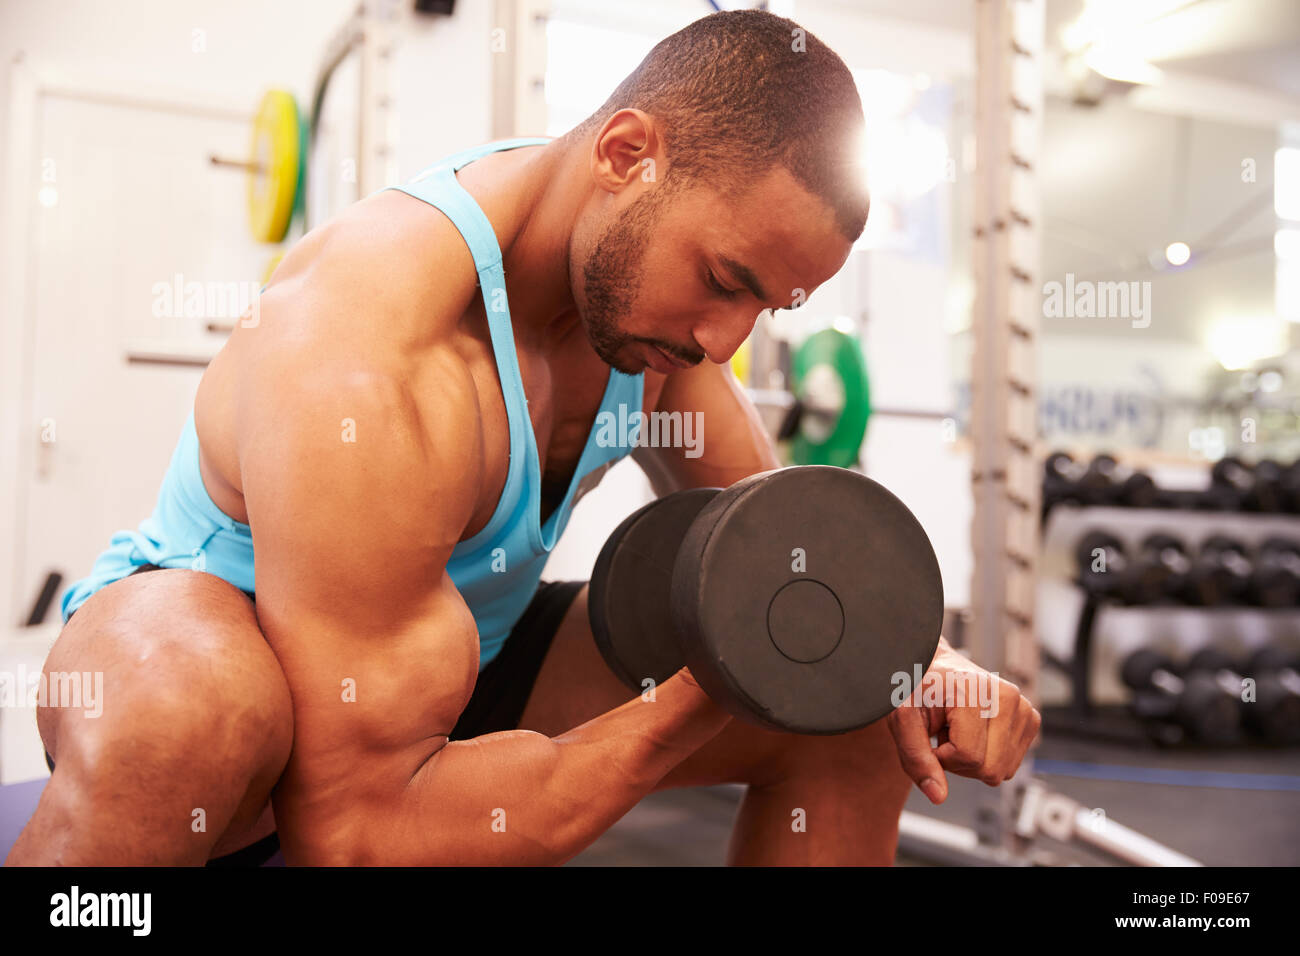 Man exercising with dumbbells dans une salle de sport, tir horizontal Banque D'Images